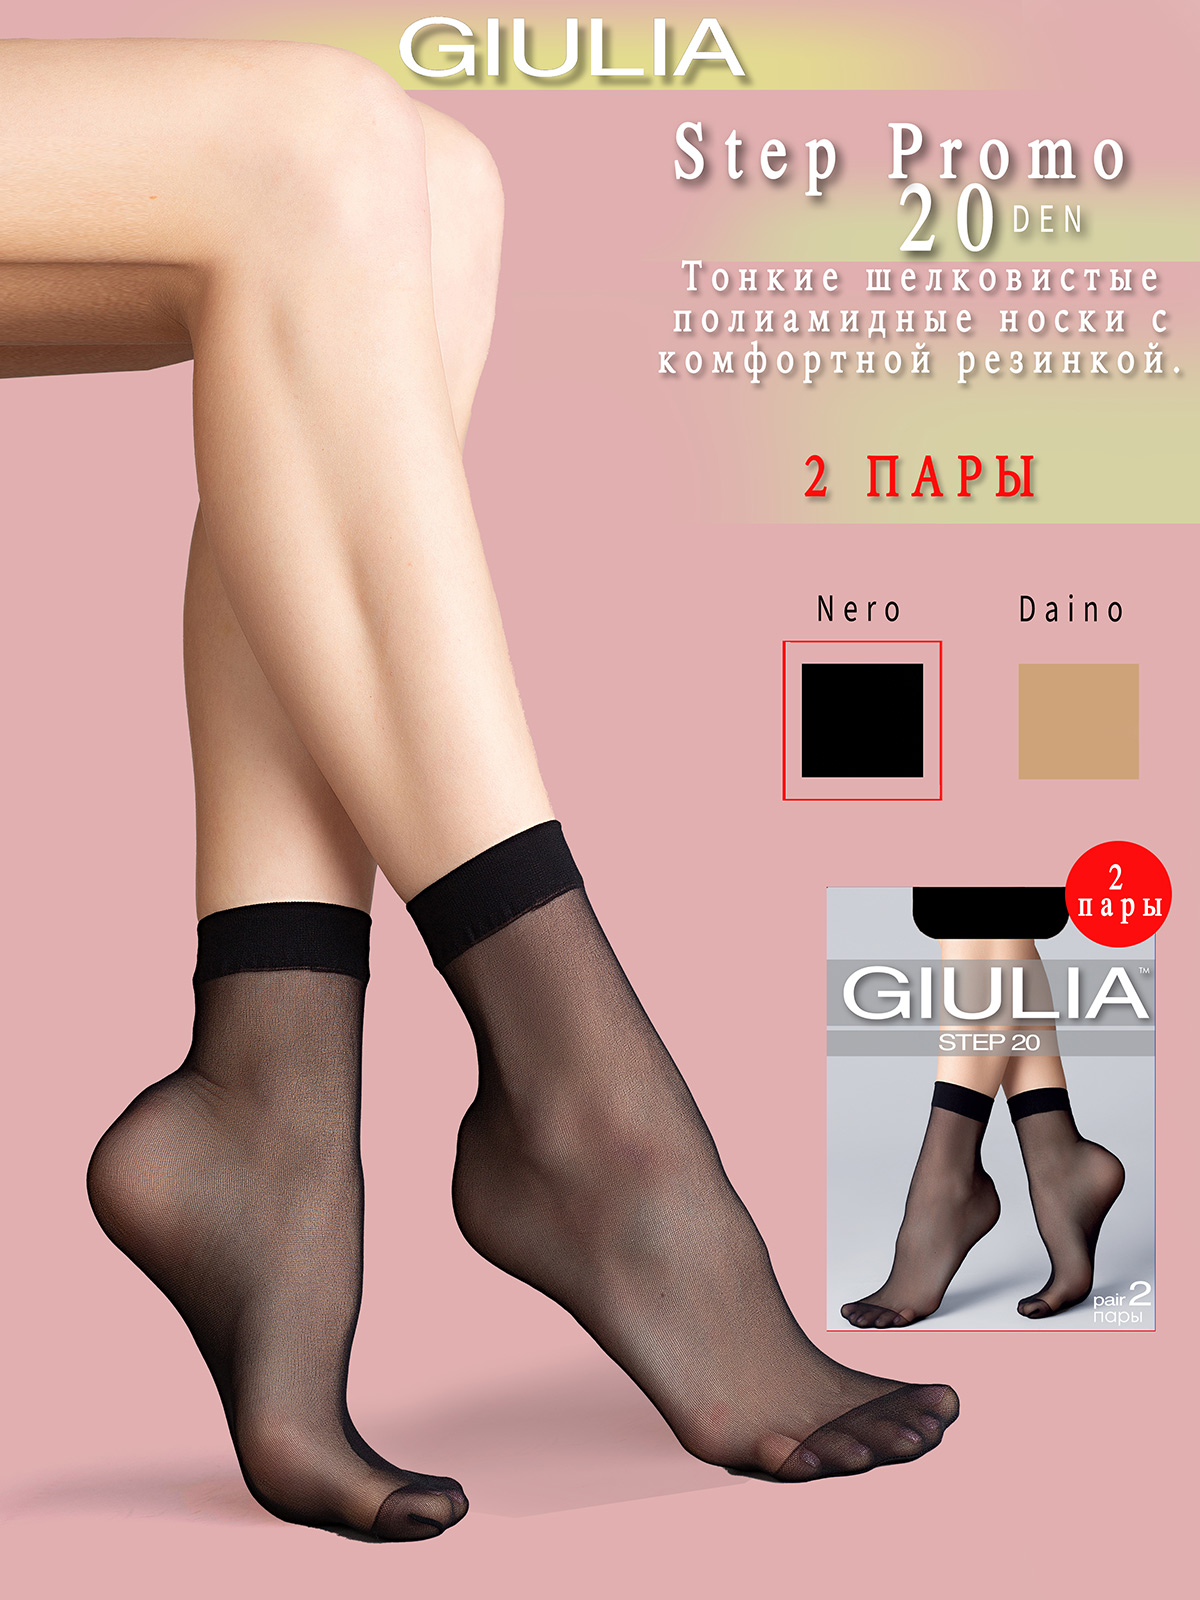 Комплект носков женских Giulia STEP PROMO 20 черных one size, 2 пары